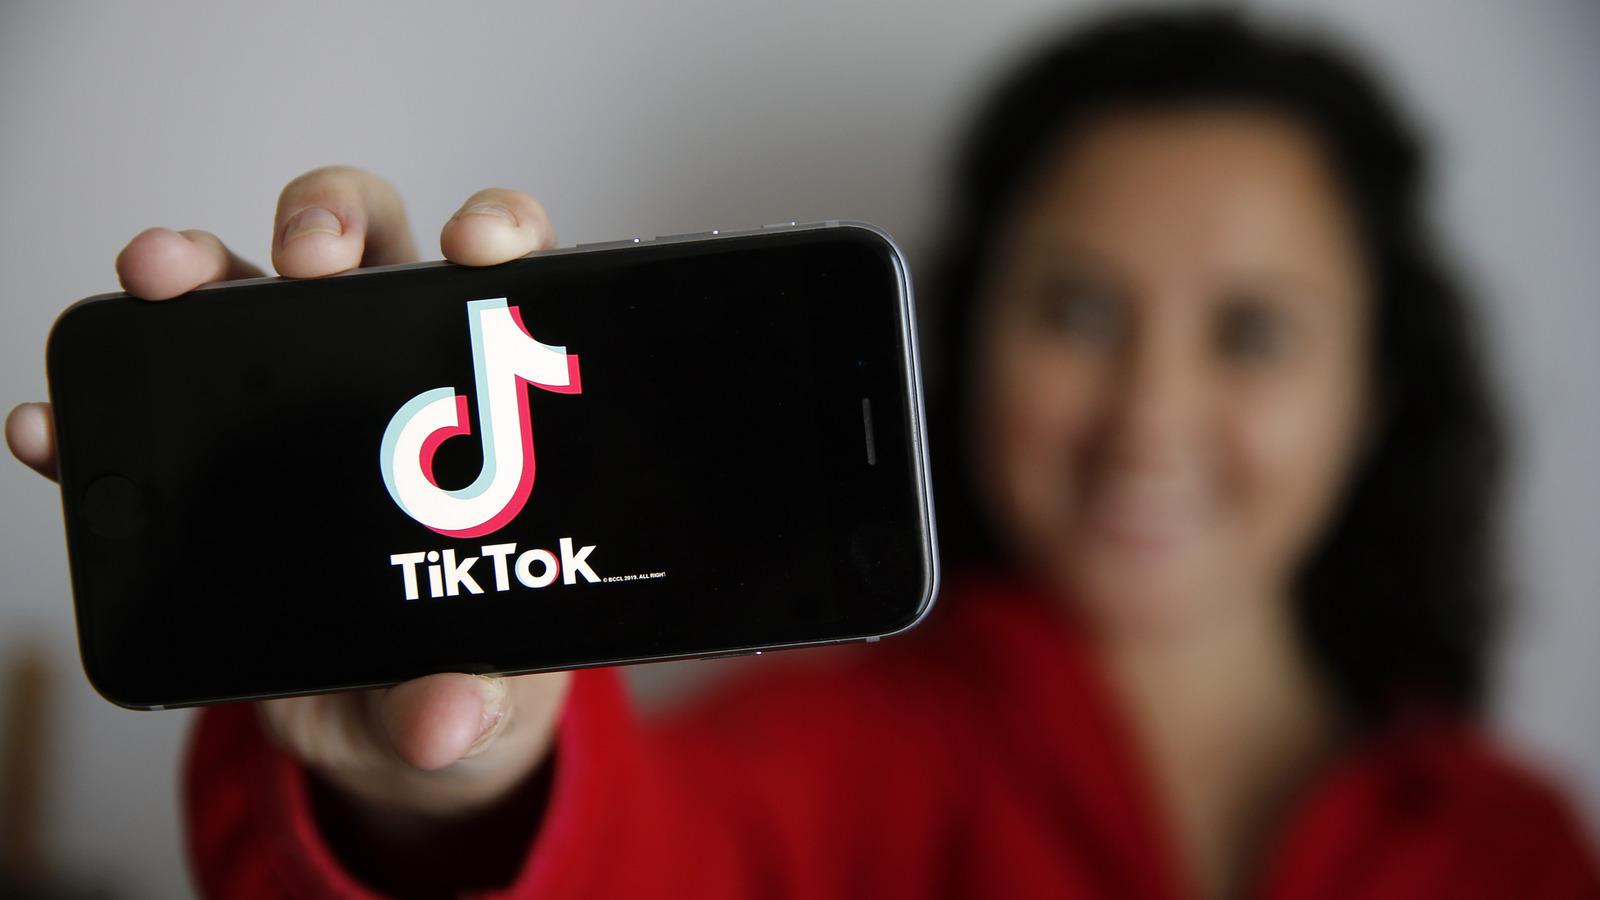 یادداشت های رقیب اینستاگرام TikTok برای برخی از کاربران محدود راه اندازی می شود